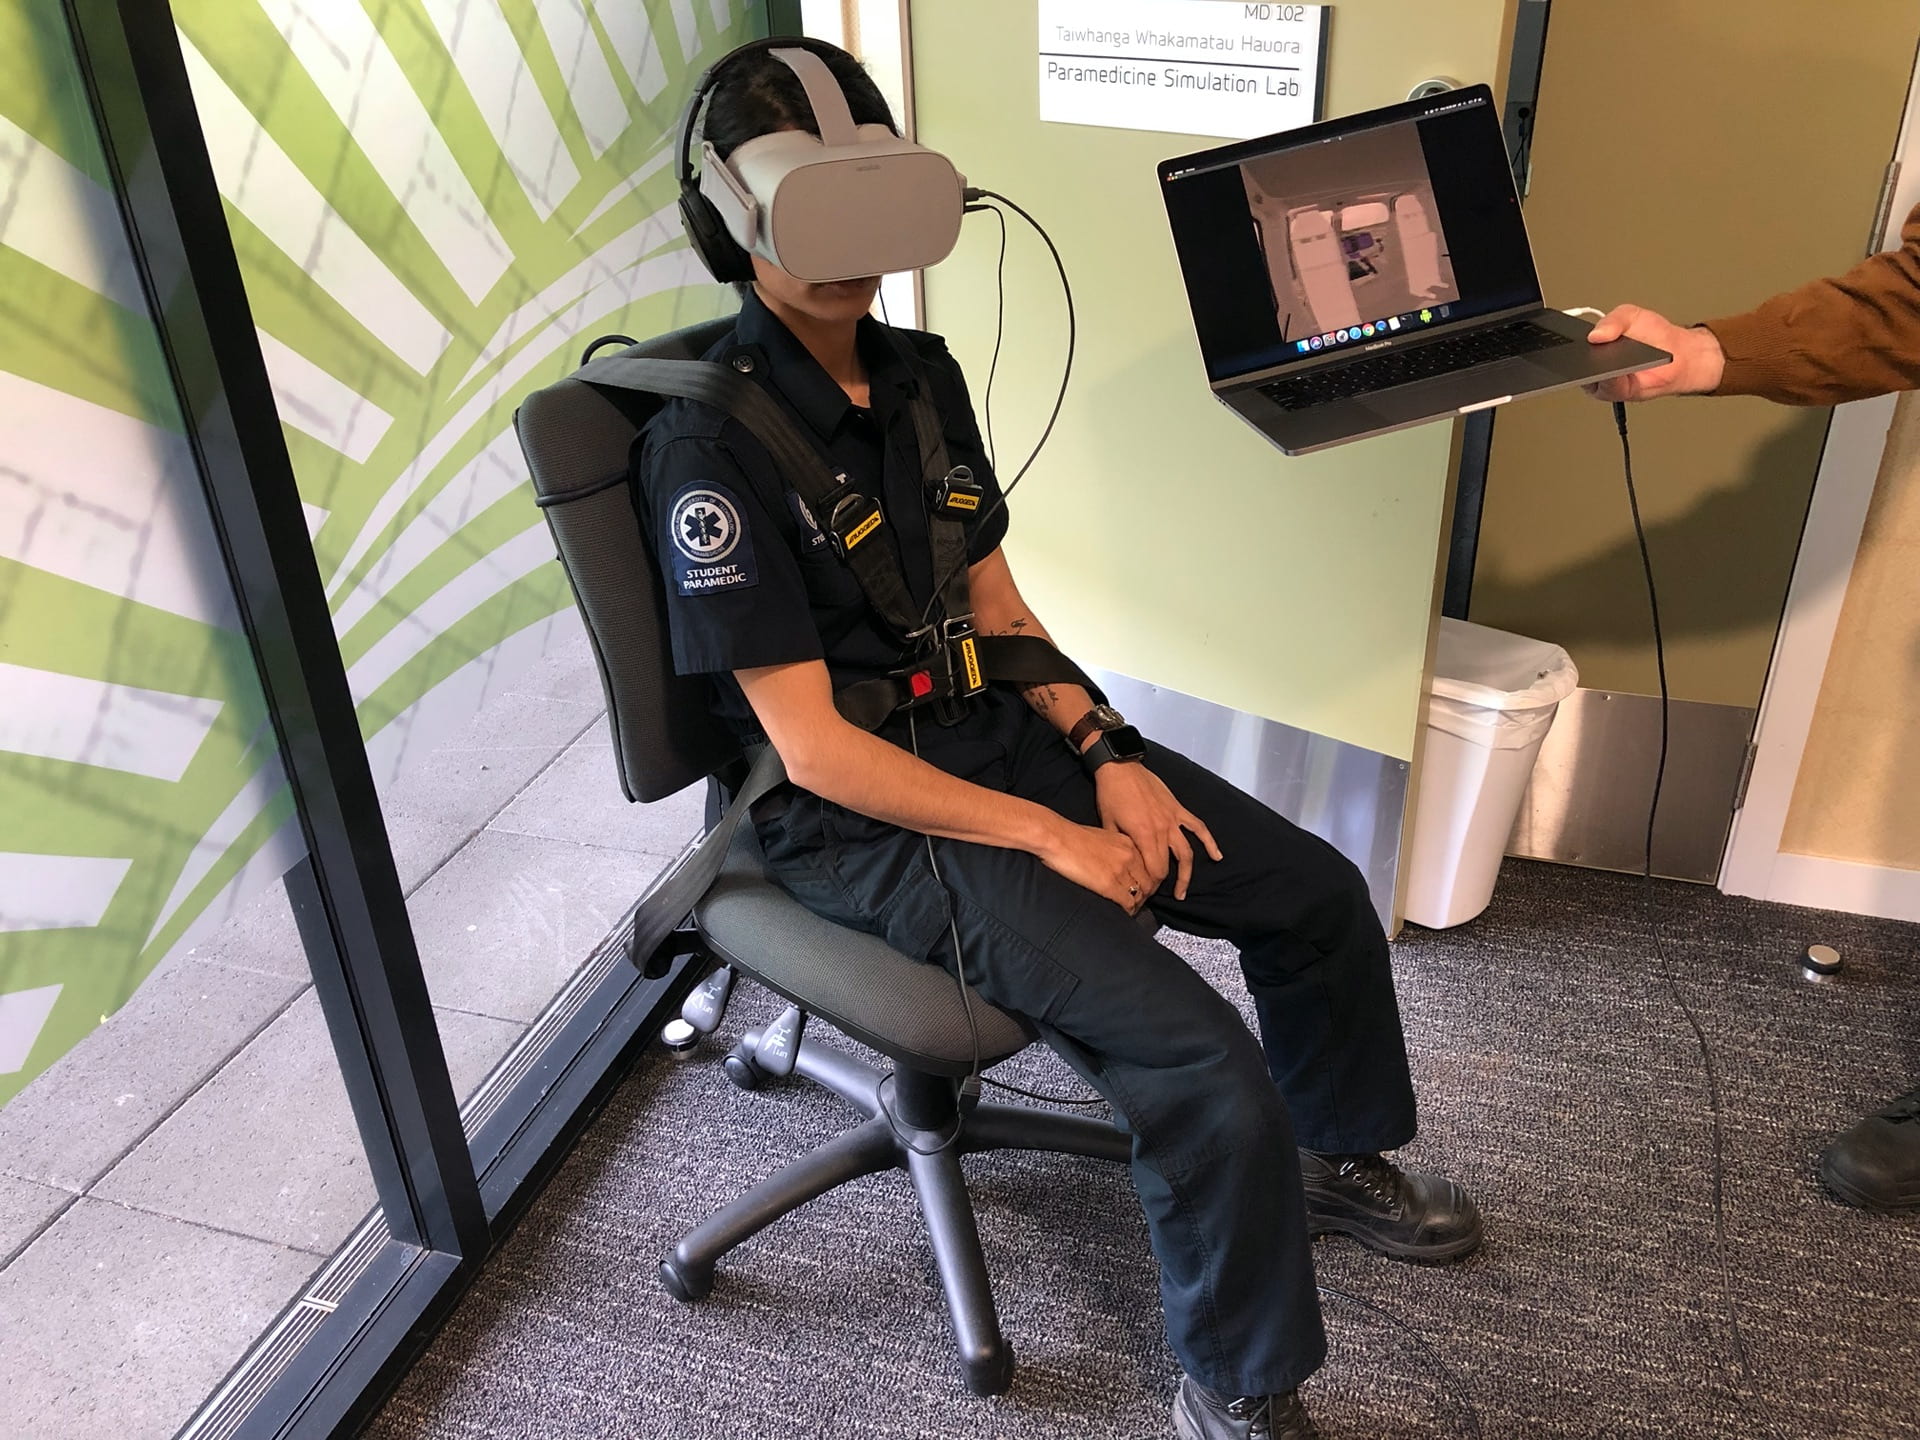 VR Paramedicine